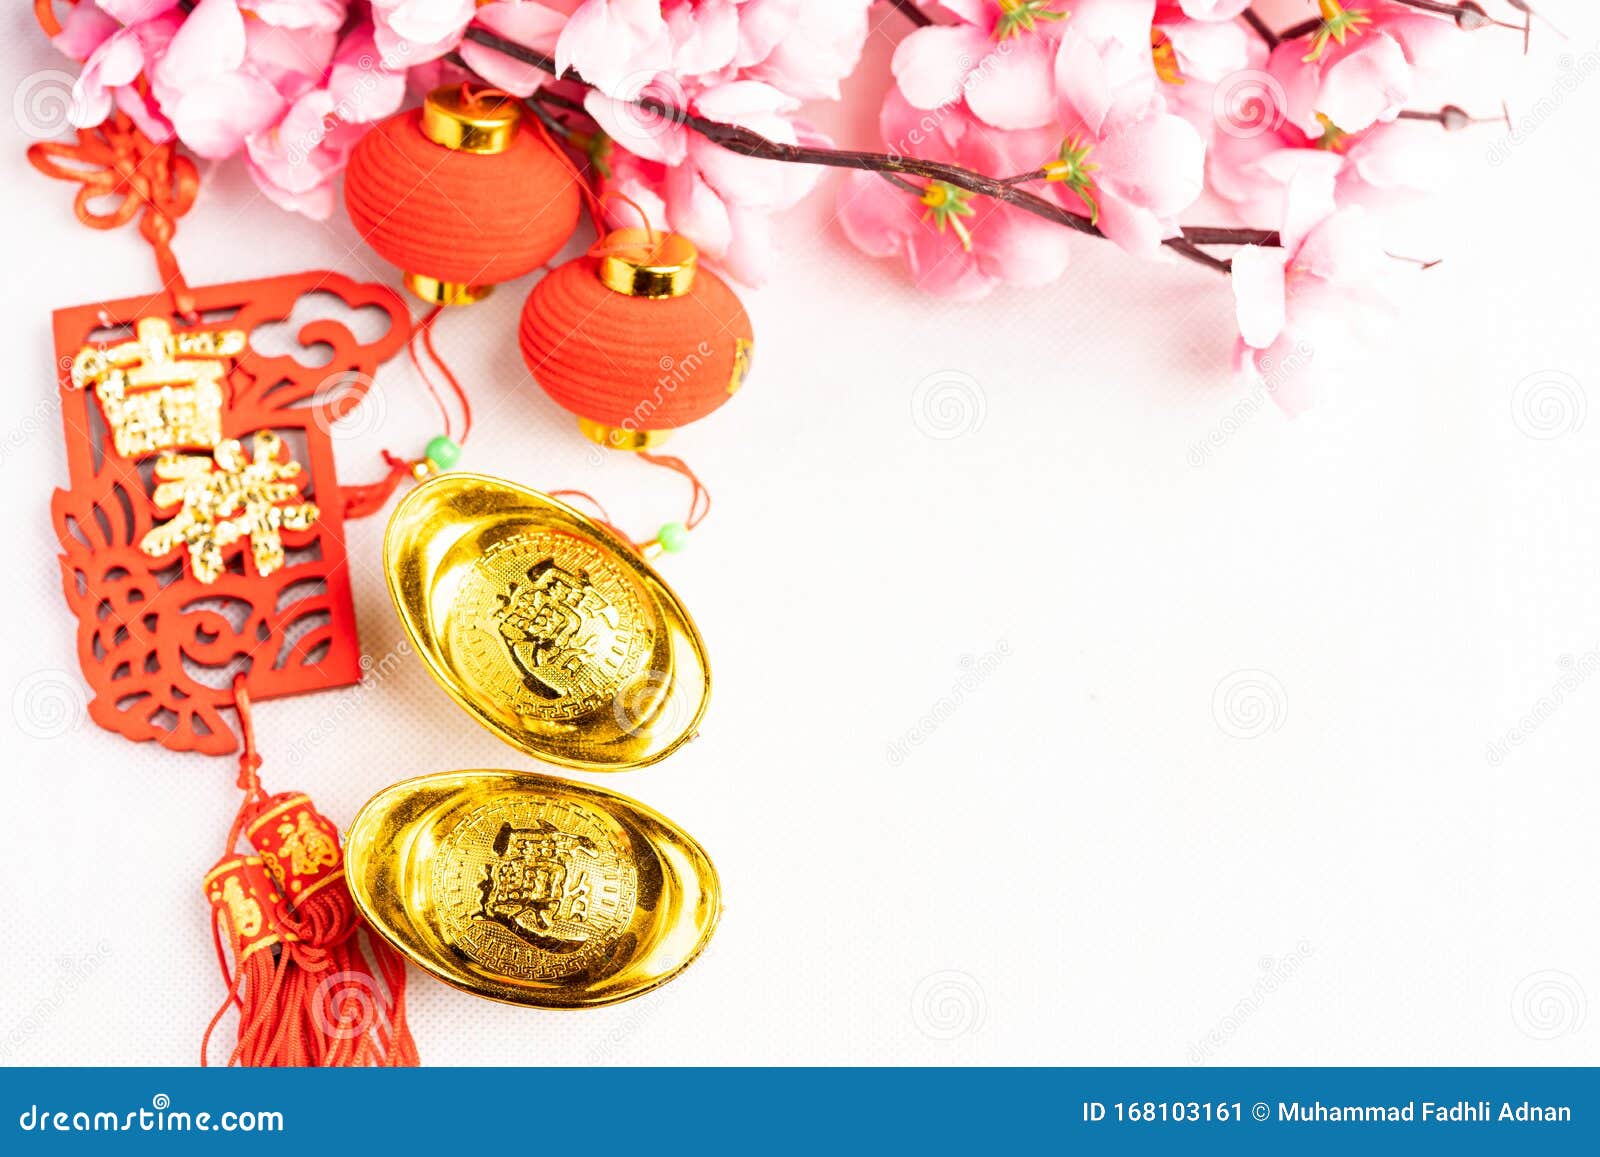 Tết Trung Thu: Tết Trung Thu là một trong những ngày lễ truyền thống quan trọng của người Việt, đánh dấu sự kết thúc của mùa hè và bắt đầu của mùa thu. Hãy cùng xem những hình ảnh về Tết Trung Thu để tìm lại ký ức tuổi thơ và cảm nhận được sự ấm áp, tình cảm trong buổi lễ này.